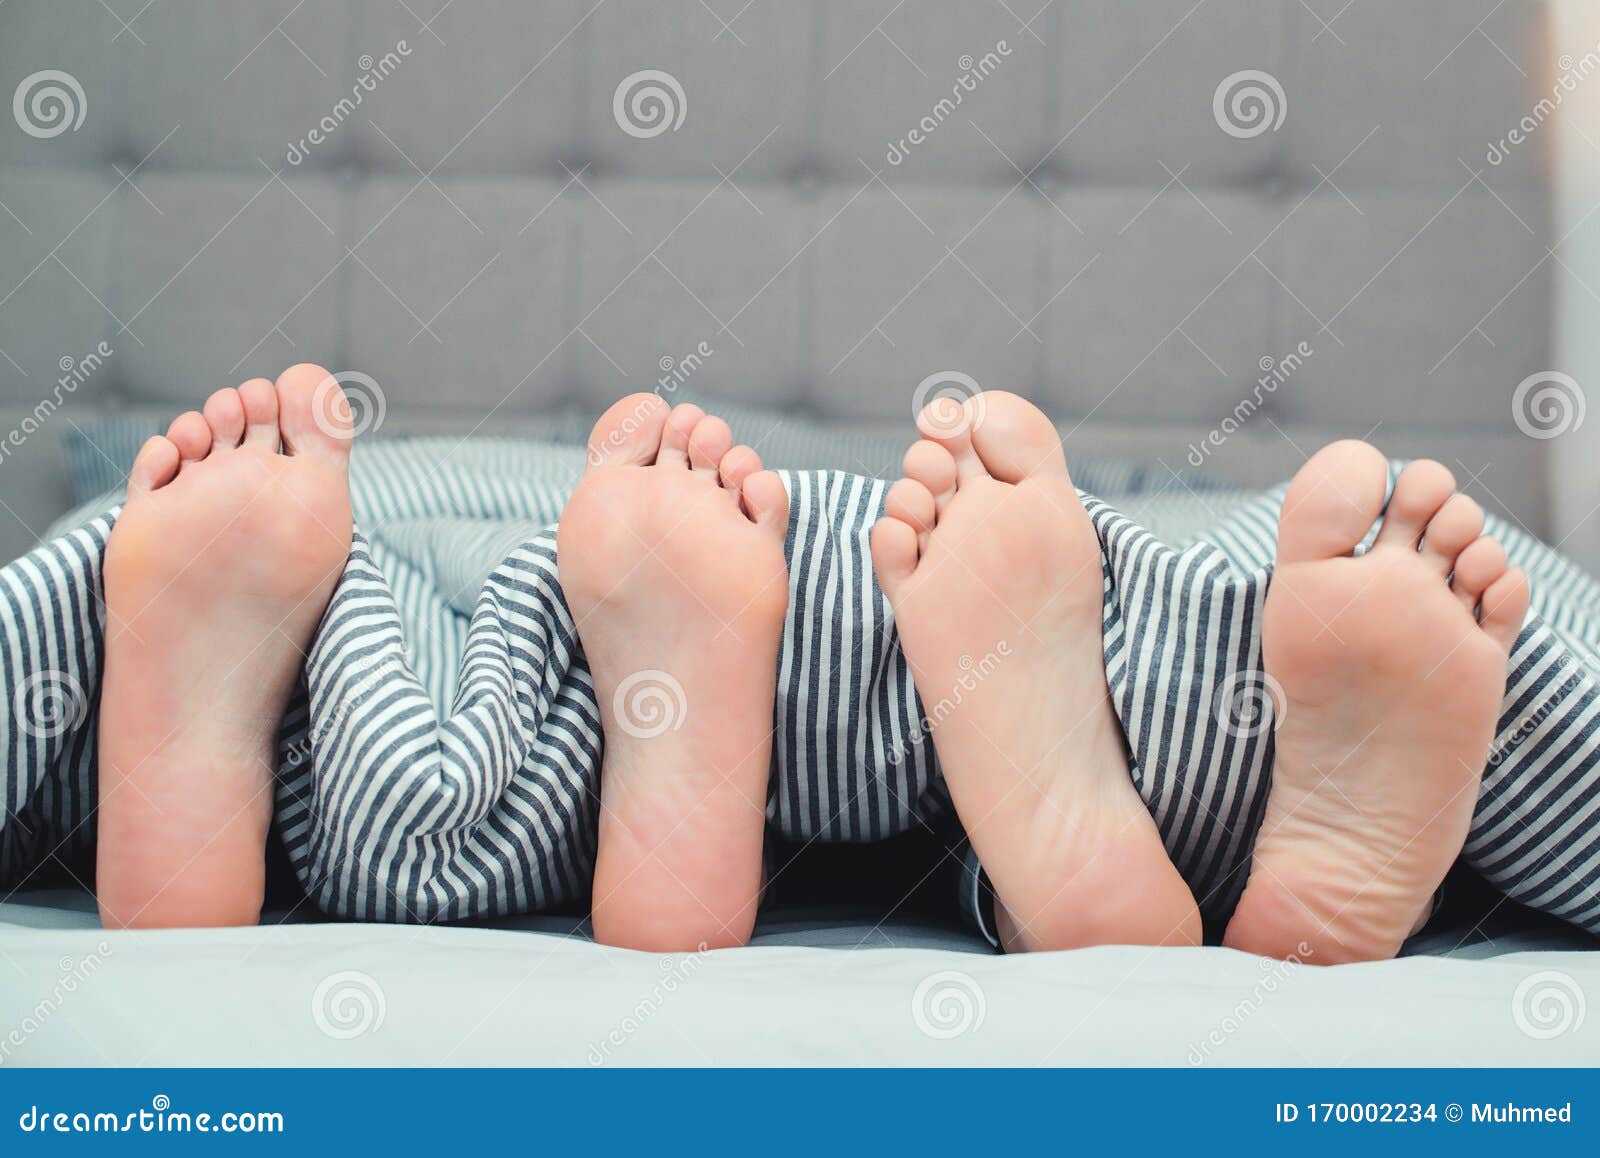 Die Füße Eines Jungen Paar Auf Dem Bett, Nahaufnahme Kollegin Und Freundin